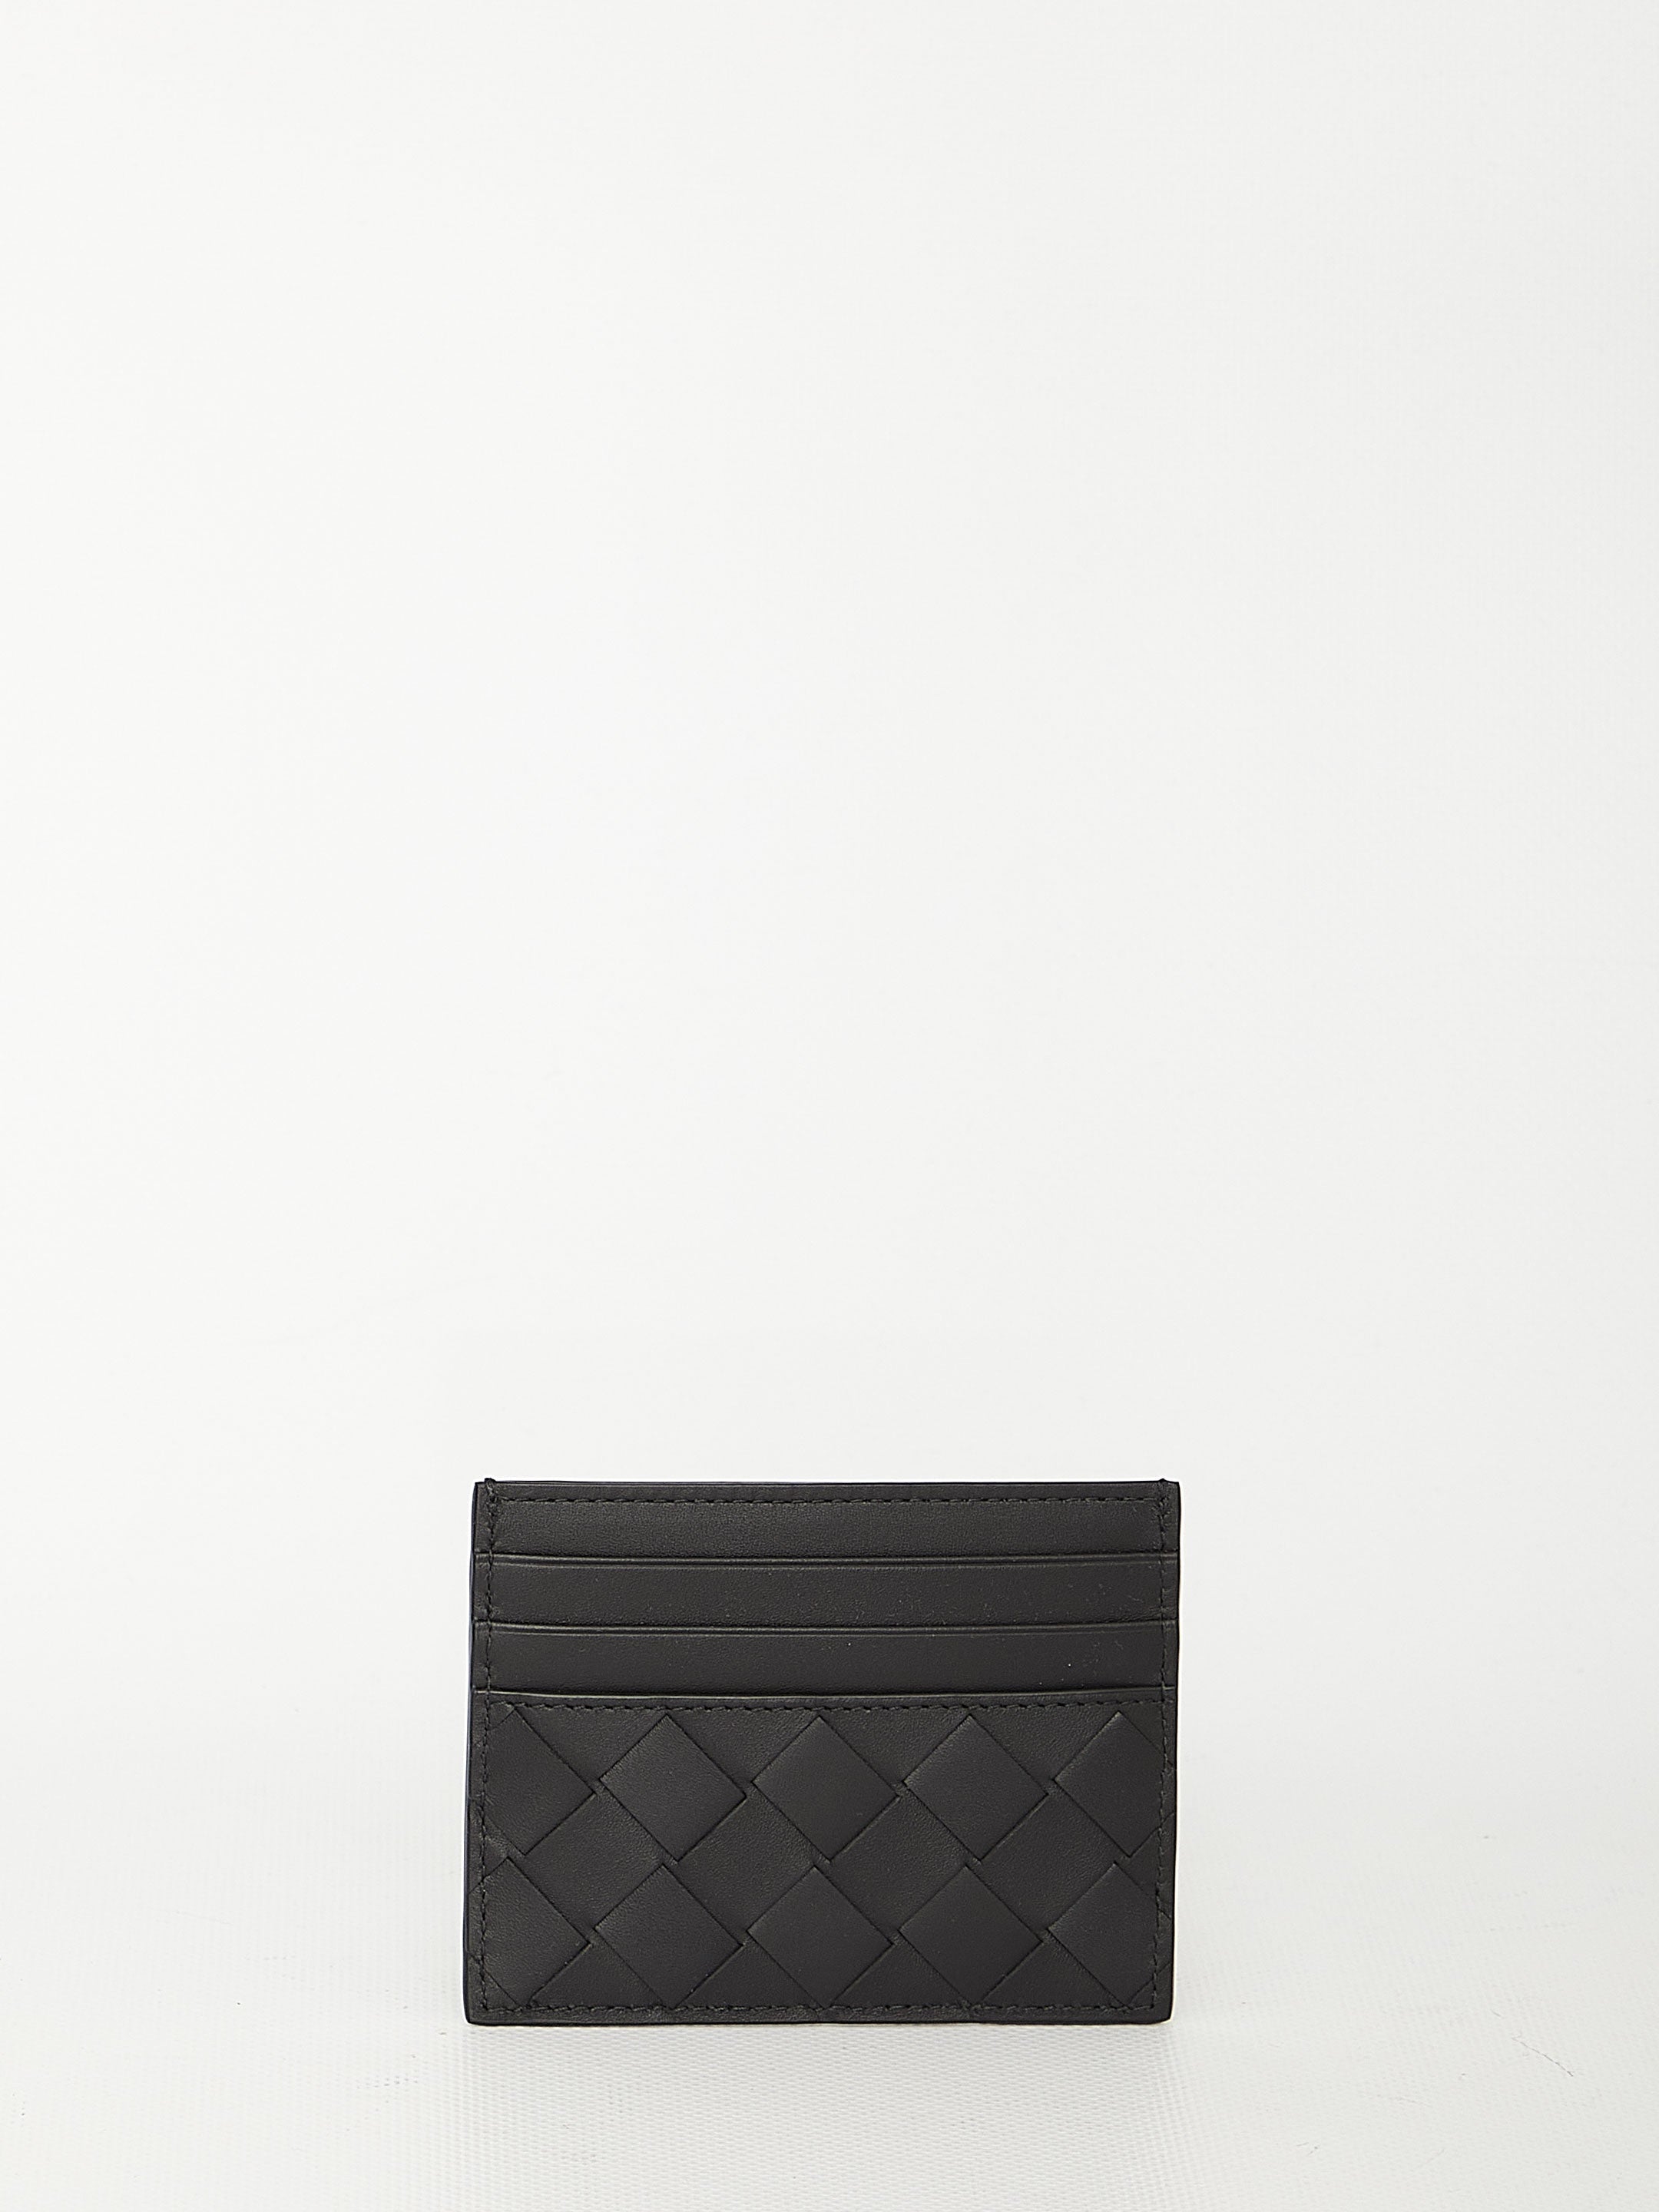 BOTTEGA-VENETA-OUTLET-SALE-Black-leather-cardholder-Taschen-QT-BLACK-ARCHIVE-COLLECTION.jpg